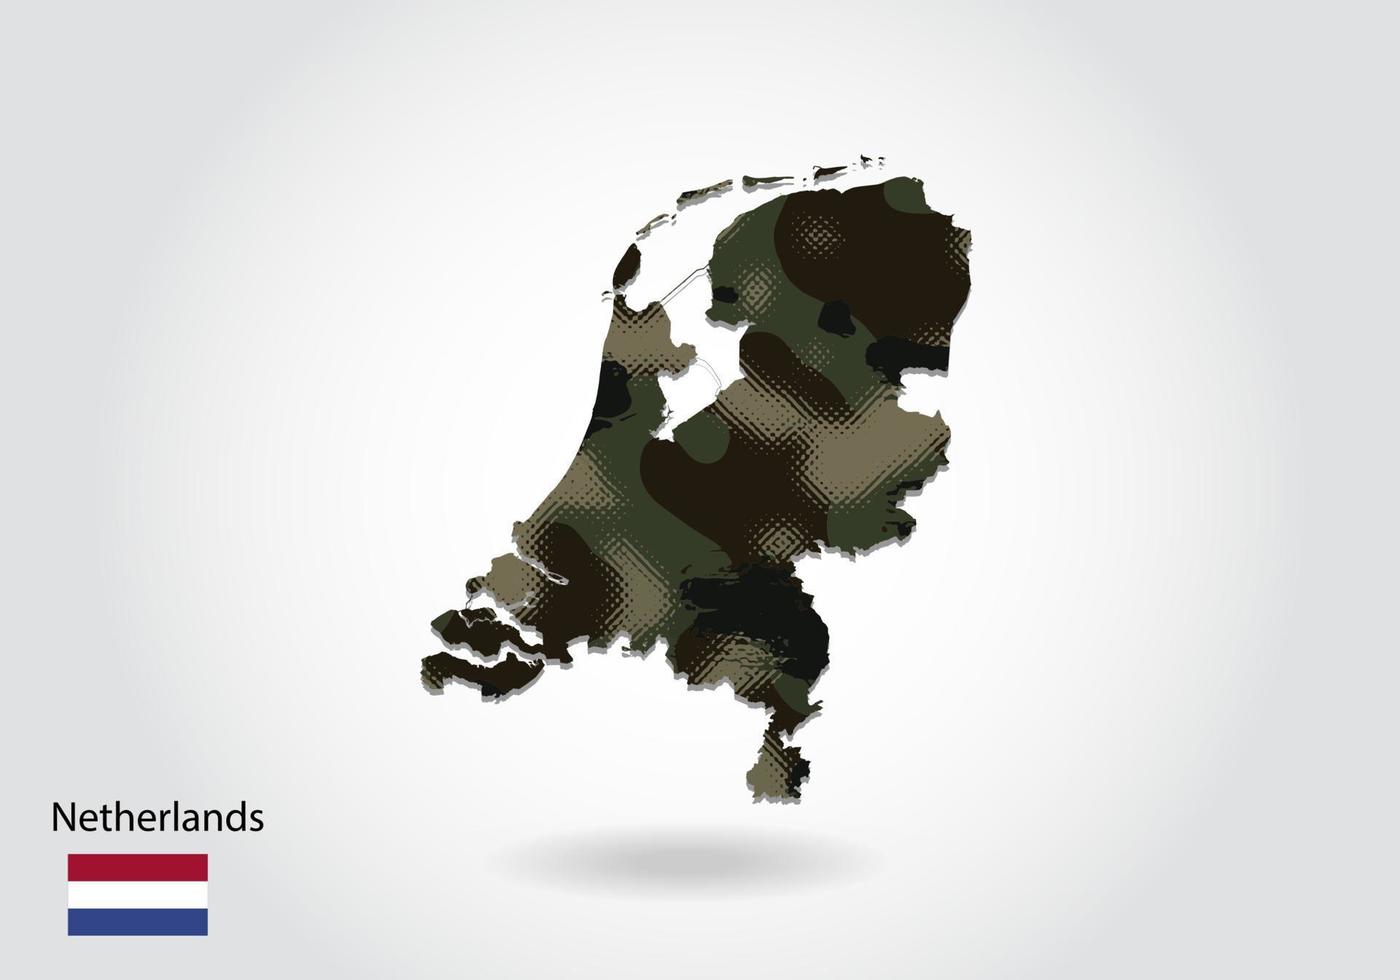 mapa da Holanda com padrão de camuflagem, floresta - textura verde no mapa. conceito militar para exército, soldado e guerra. brasão, bandeira. vetor